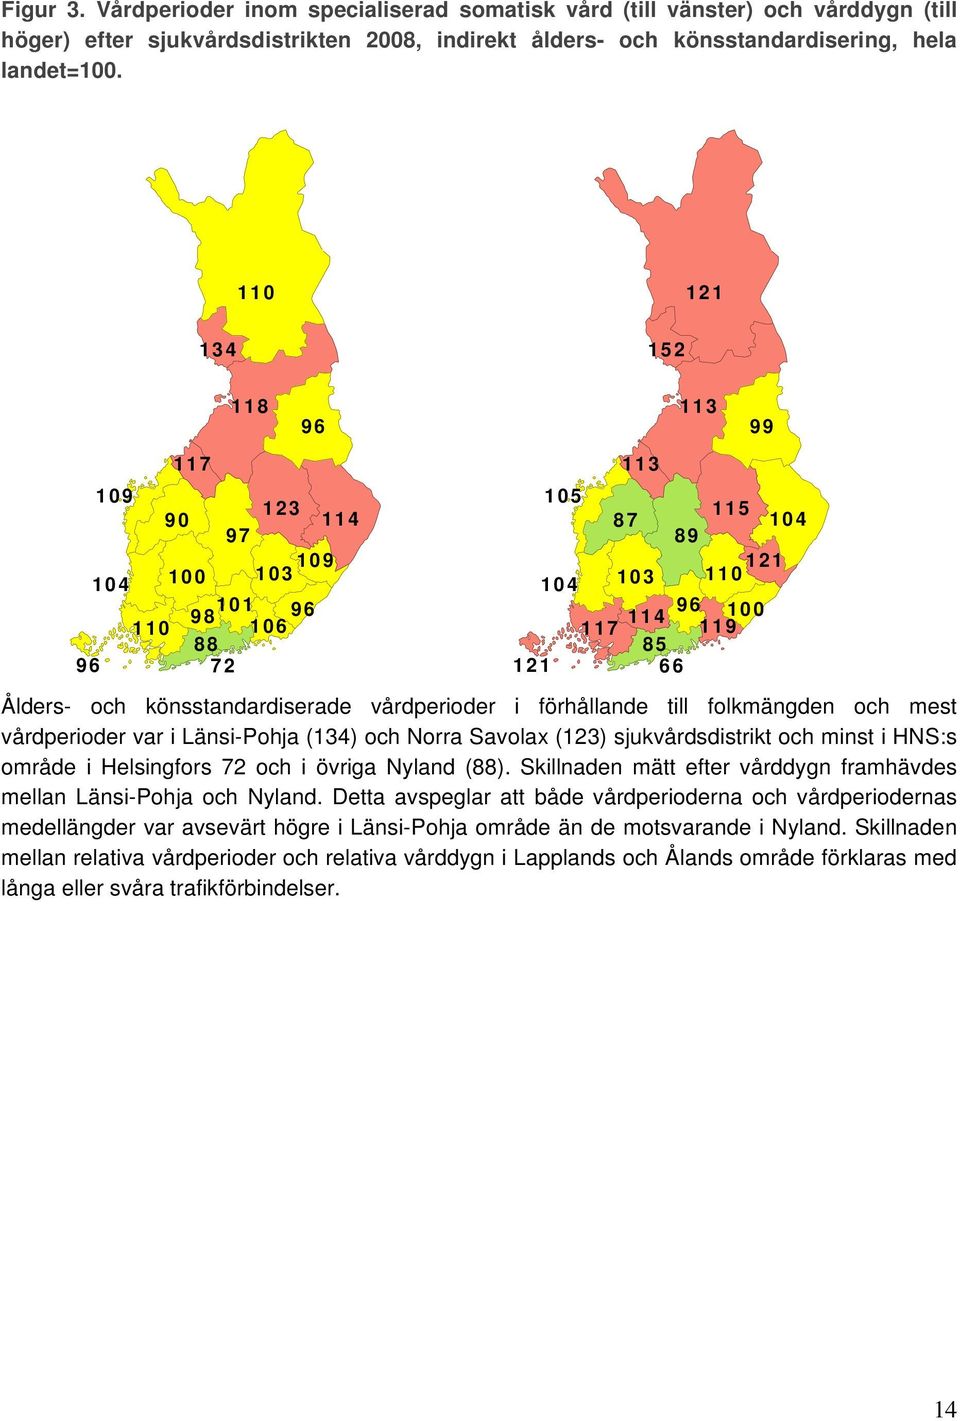 vårdperioder i förhållande till folkmängden och mest vårdperioder var i Länsi-Pohja (134) och Norra Savolax (123) sjukvårdsdistrikt och minst i HNS:s område i Helsingfors 72 och i övriga Nyland (88).